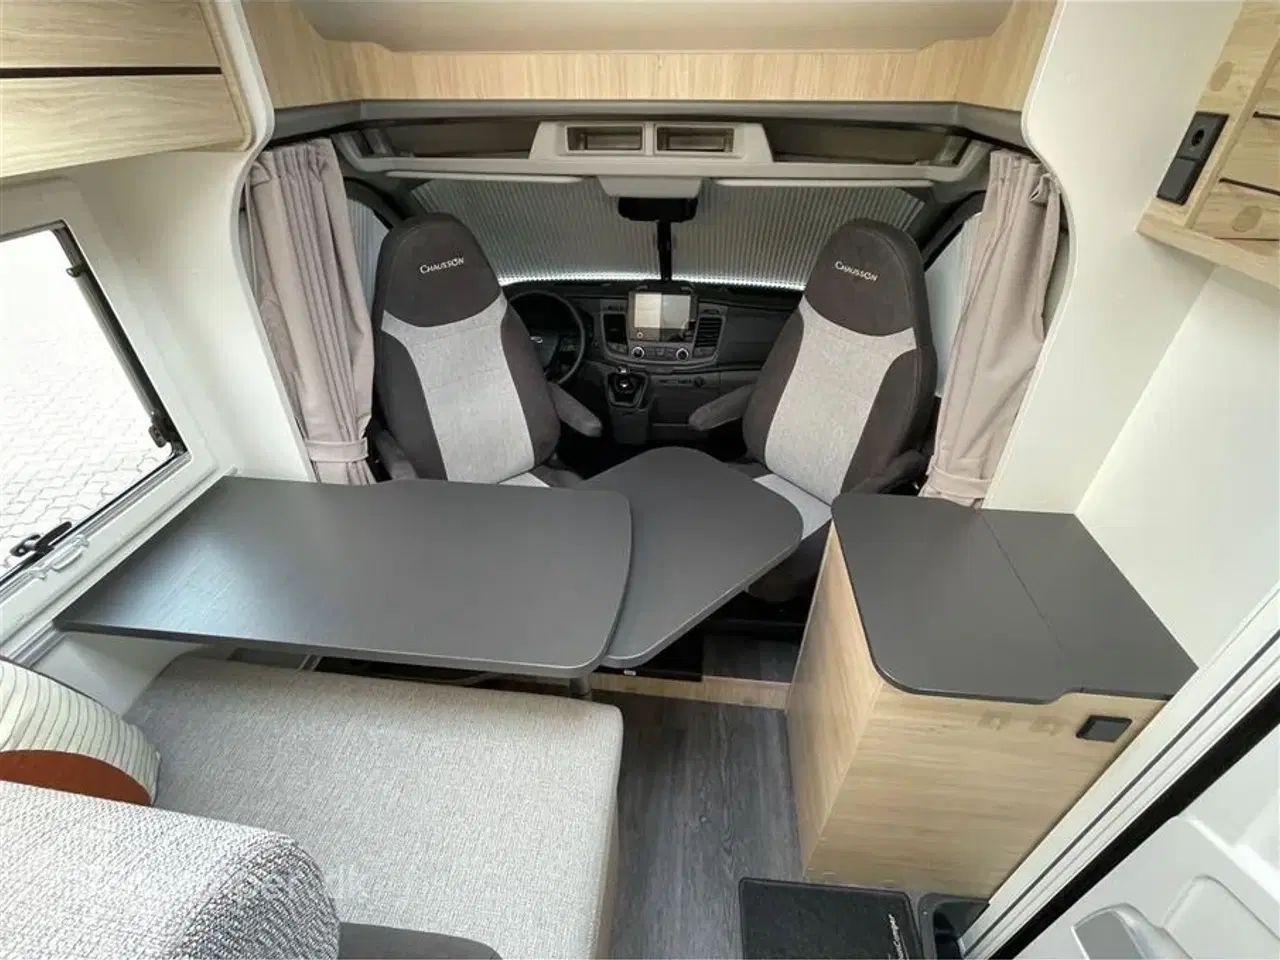 Billede 10 - 2022 - Chausson First Line S514   Smal model med god plads, dobbeltseng og stor fleksibel garage, el trin v/bodelsdør og undervognsbehandlet.